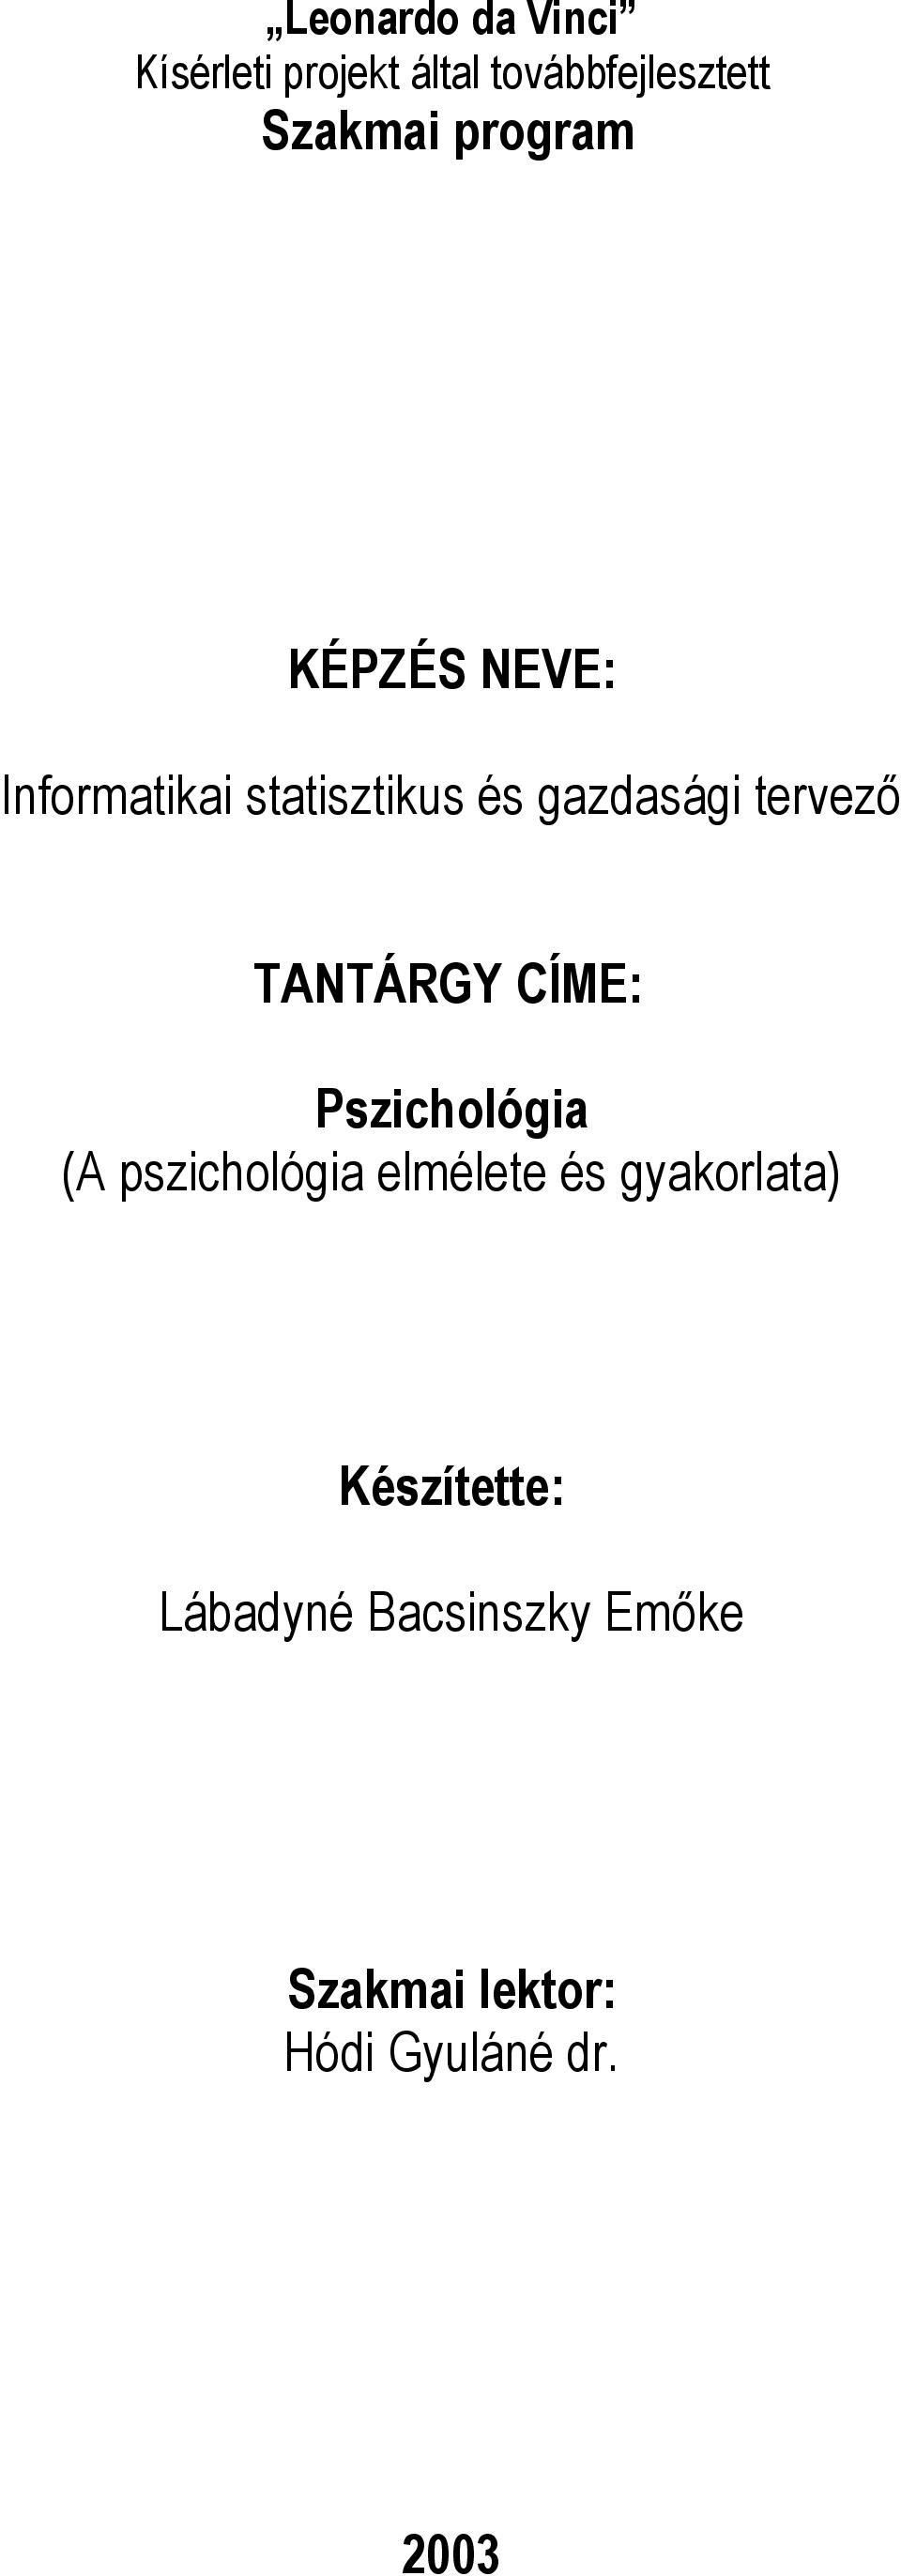 TANTÁRGY CÍME: Pszichológia (A pszichológia elmélete és gyakorlata)